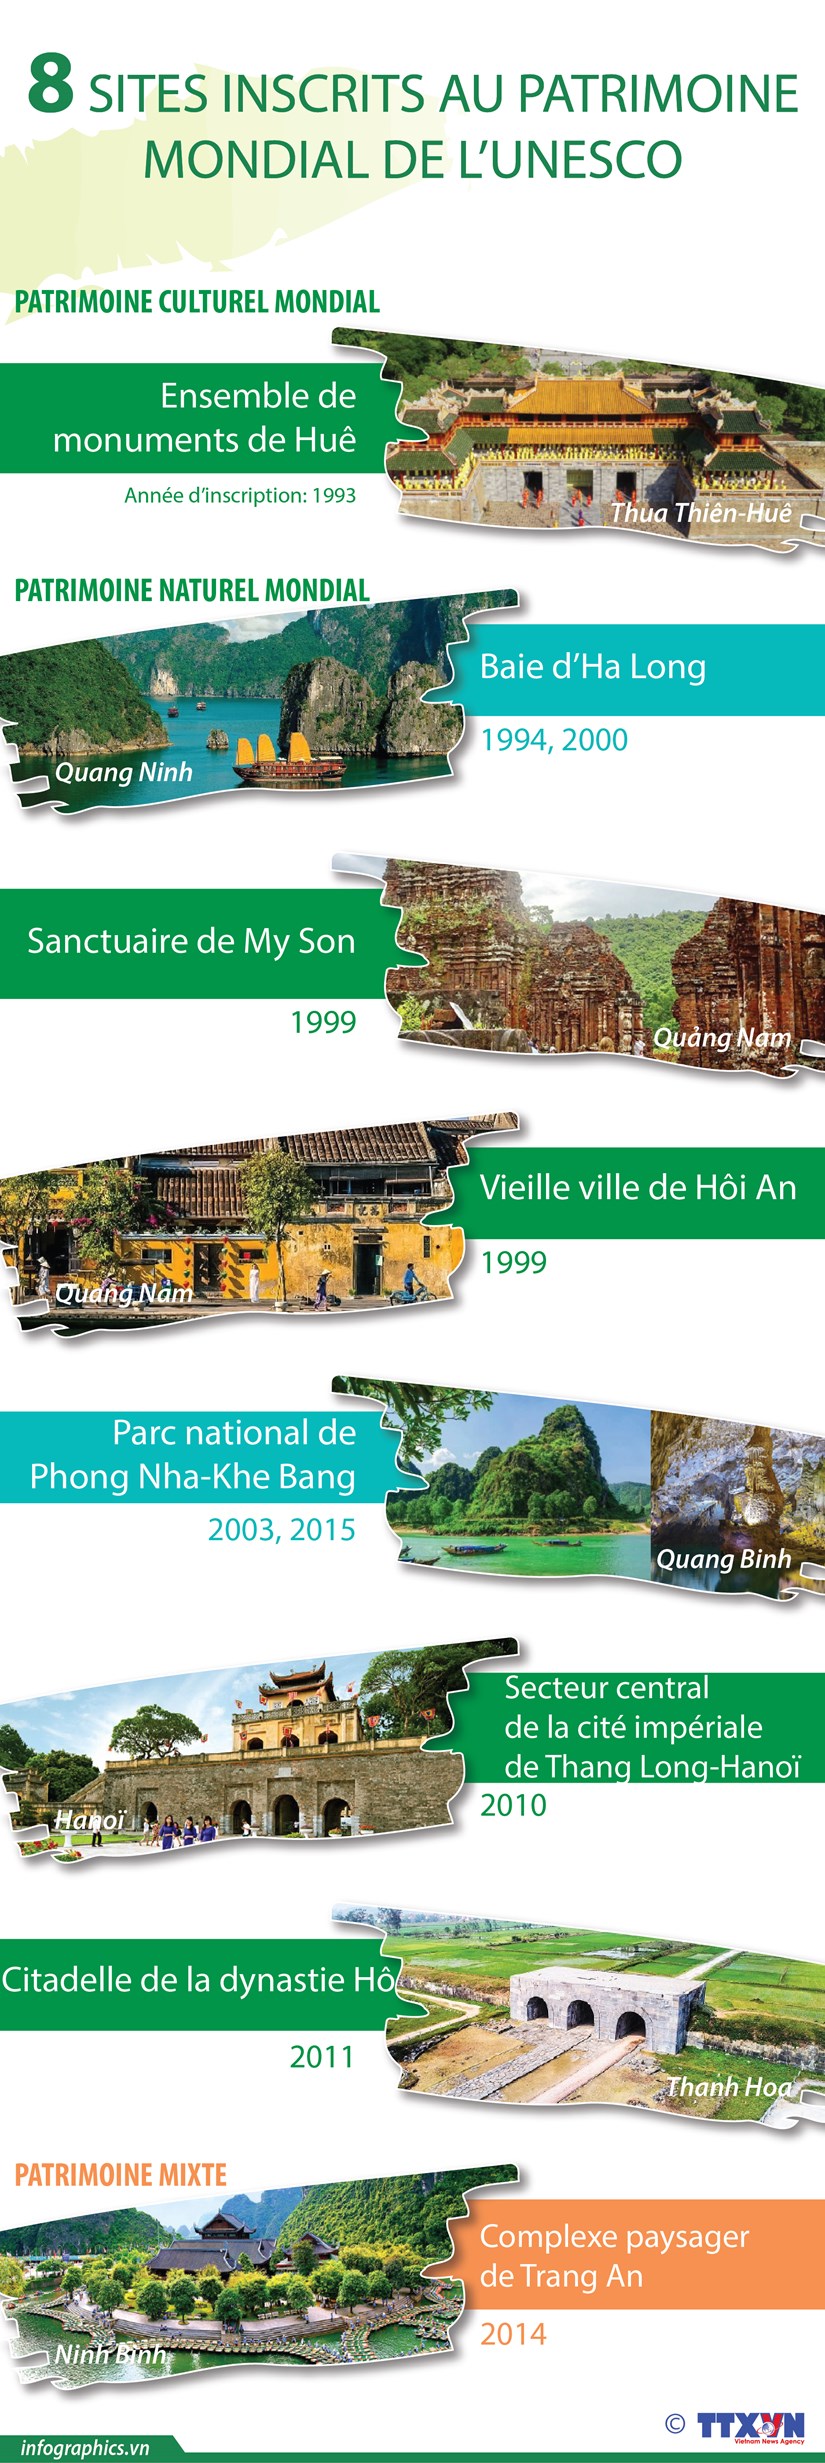 Huit sites inscrits au patrimoine mondial de l’UNESCO du Vietnam hinh anh 1